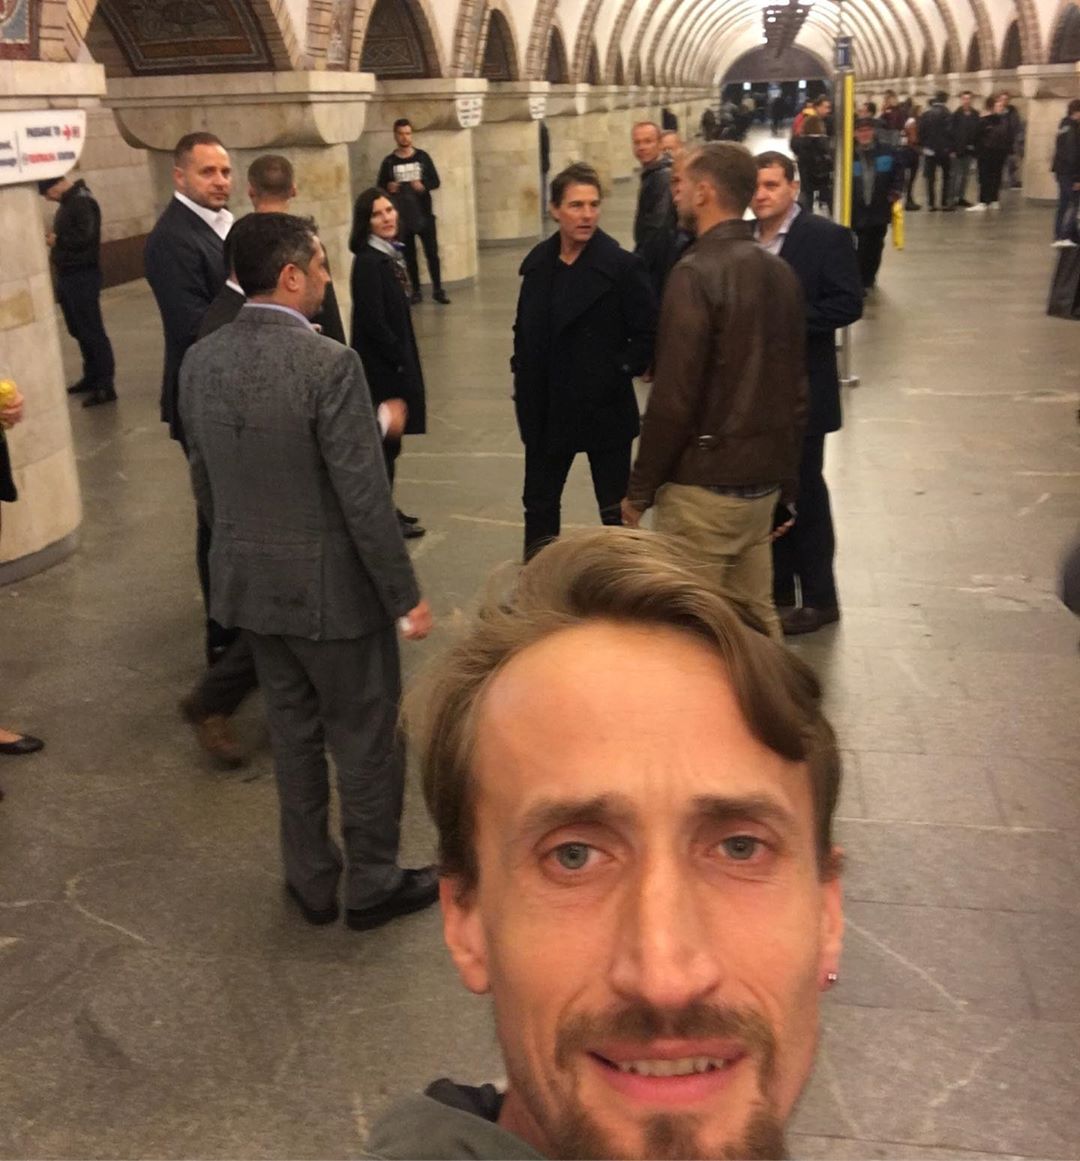 Том Круз замечен в киевском метро